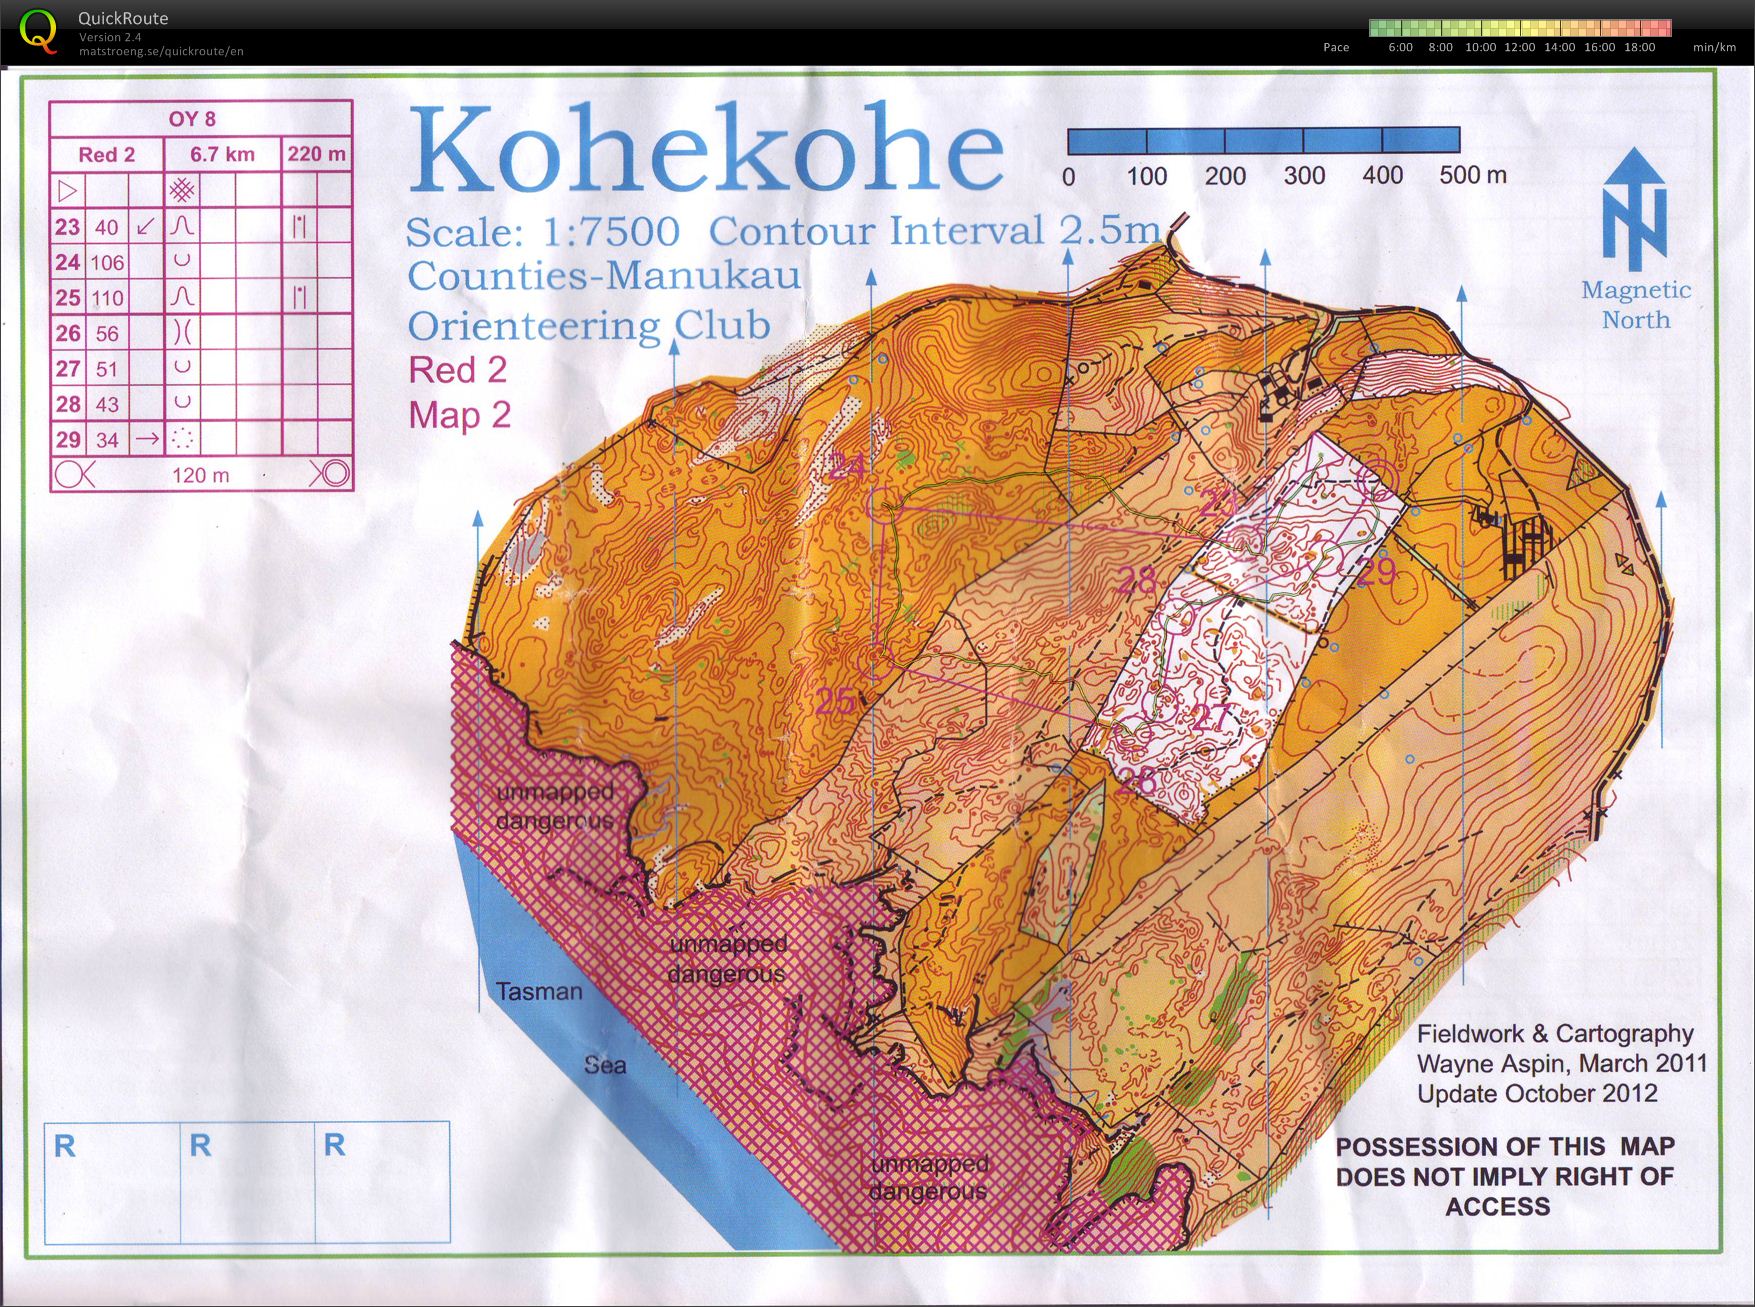 OY8 Kohekohe (part 2) (2012-10-27)